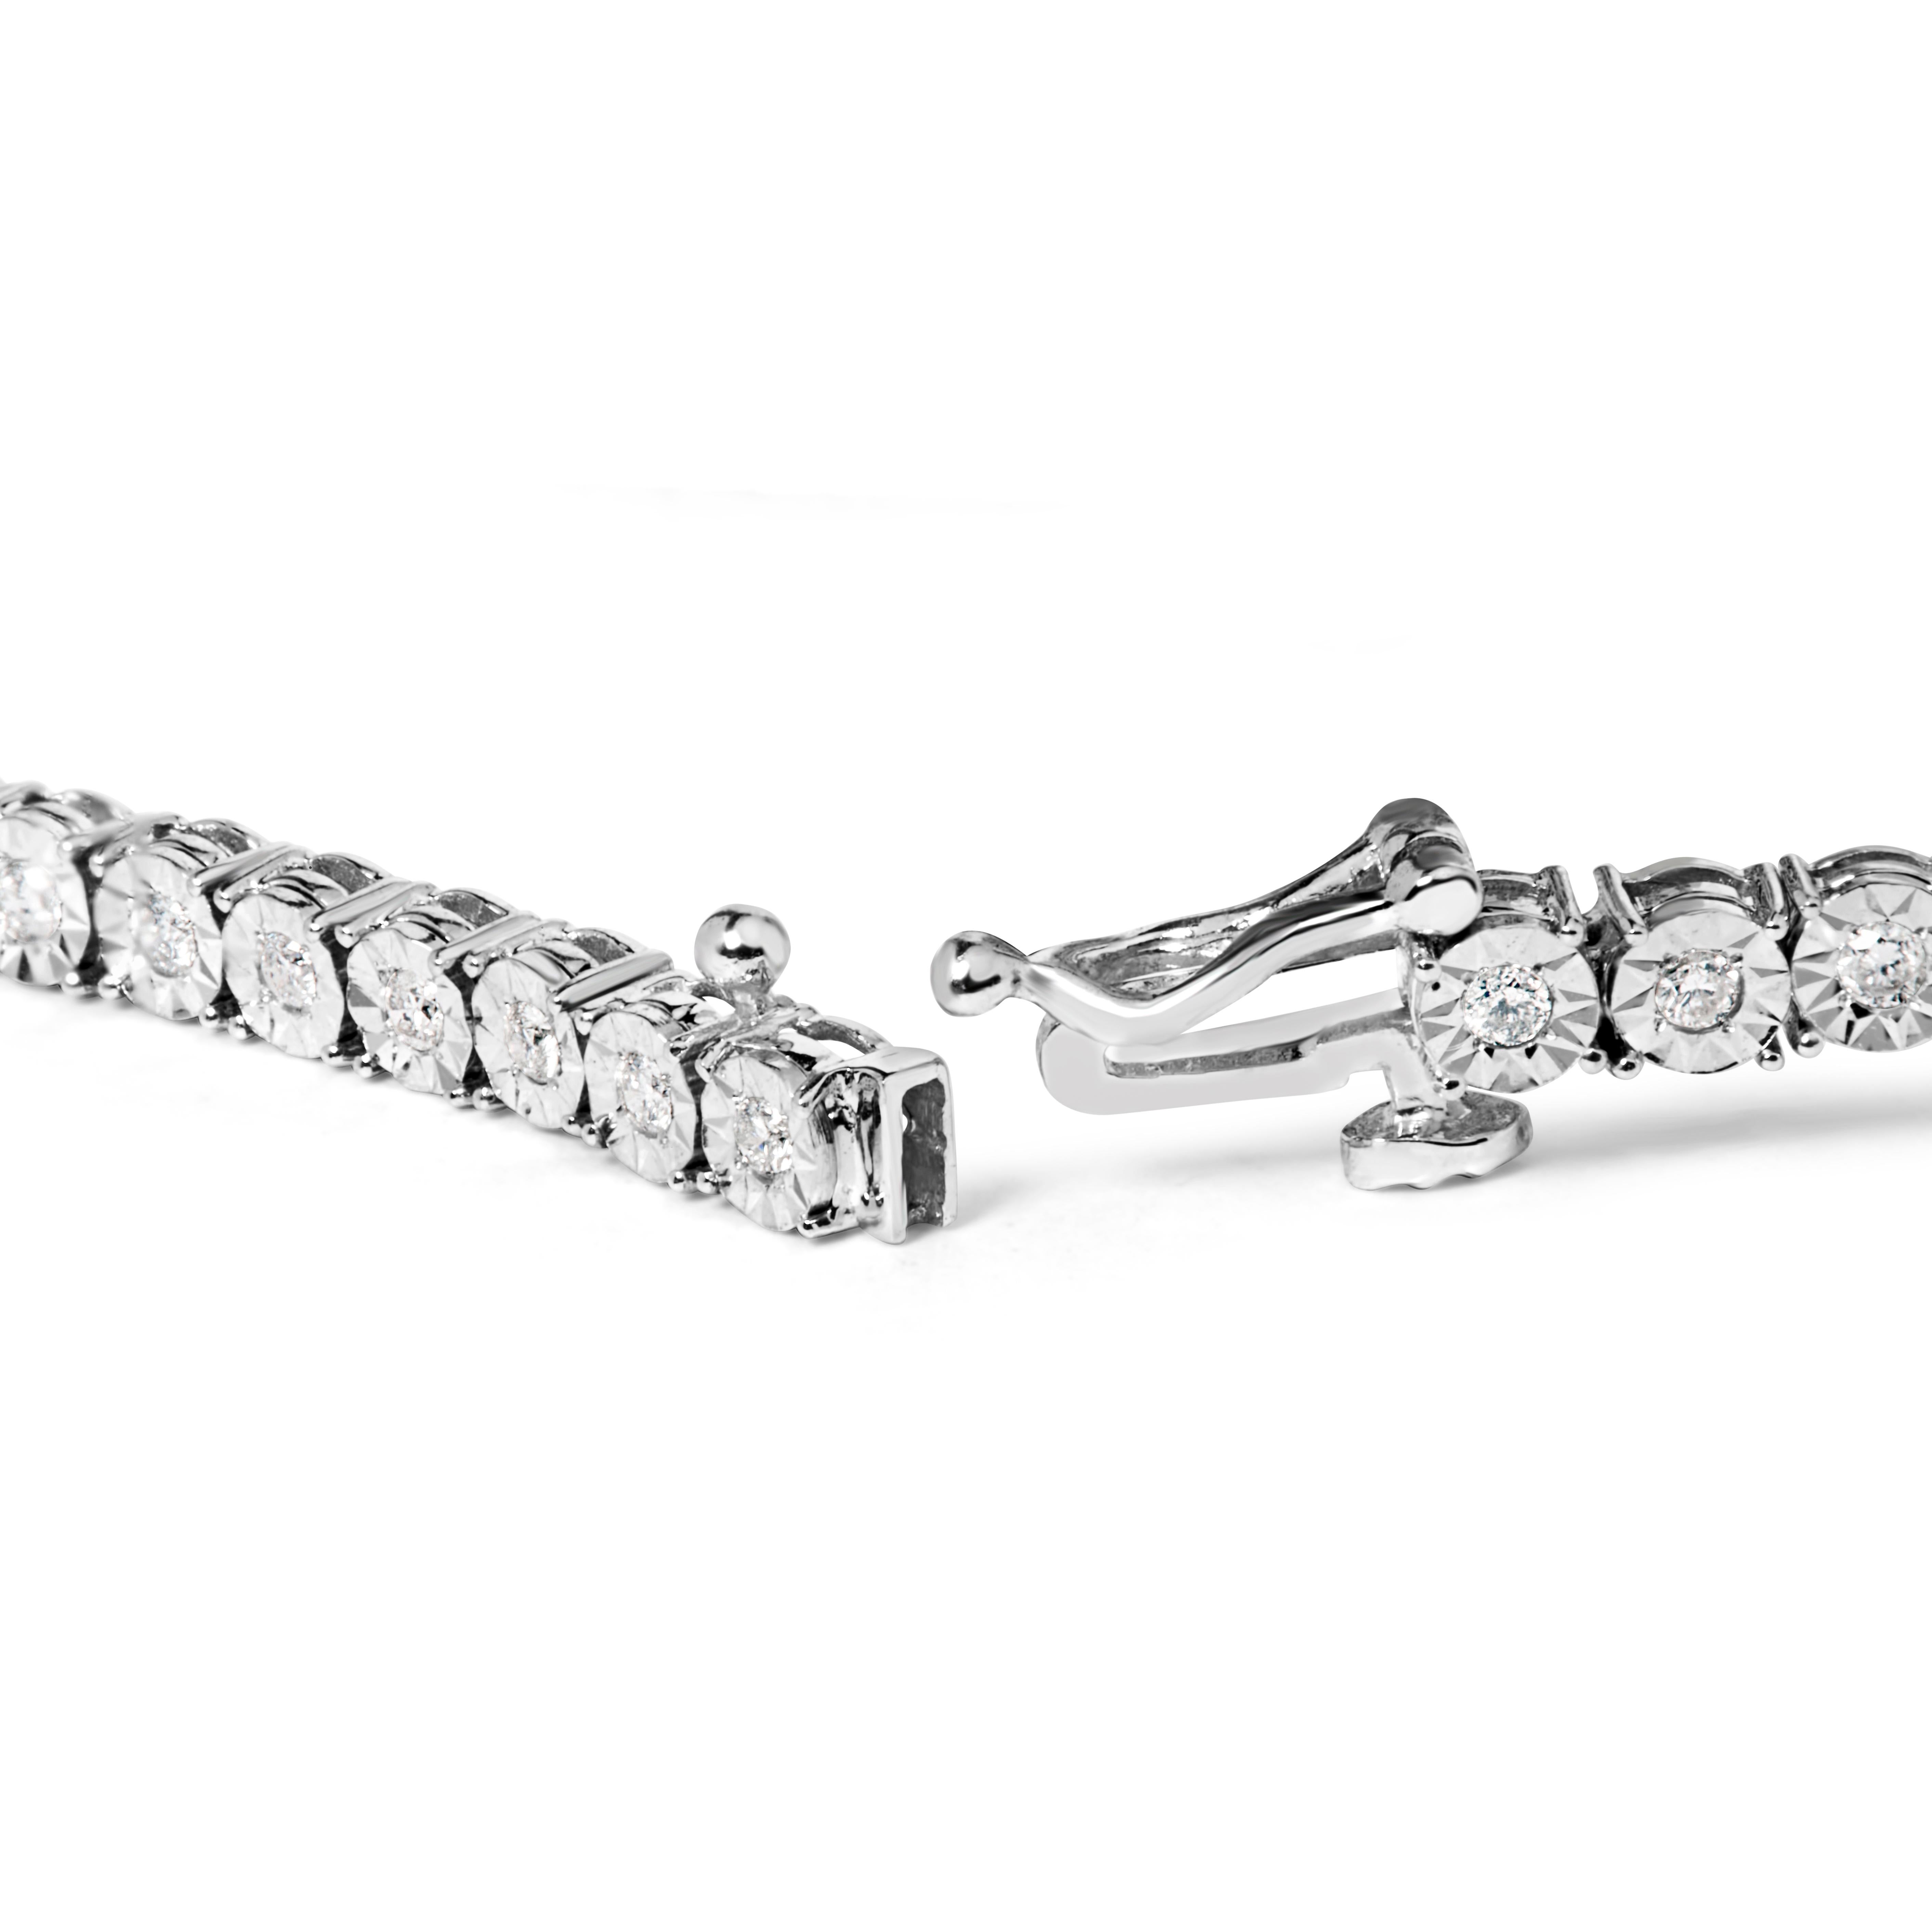 Dieses feminine und luxuriöse Tennisarmband besteht aus wunderschönen, facettenreichen Diamanten im Rosenschliff, die an den Art-déco-Schmuckstil der Vintage-Ära erinnern. Echte, massive Glieder aus 925er Sterlingsilber sorgen für einen zeitlosen